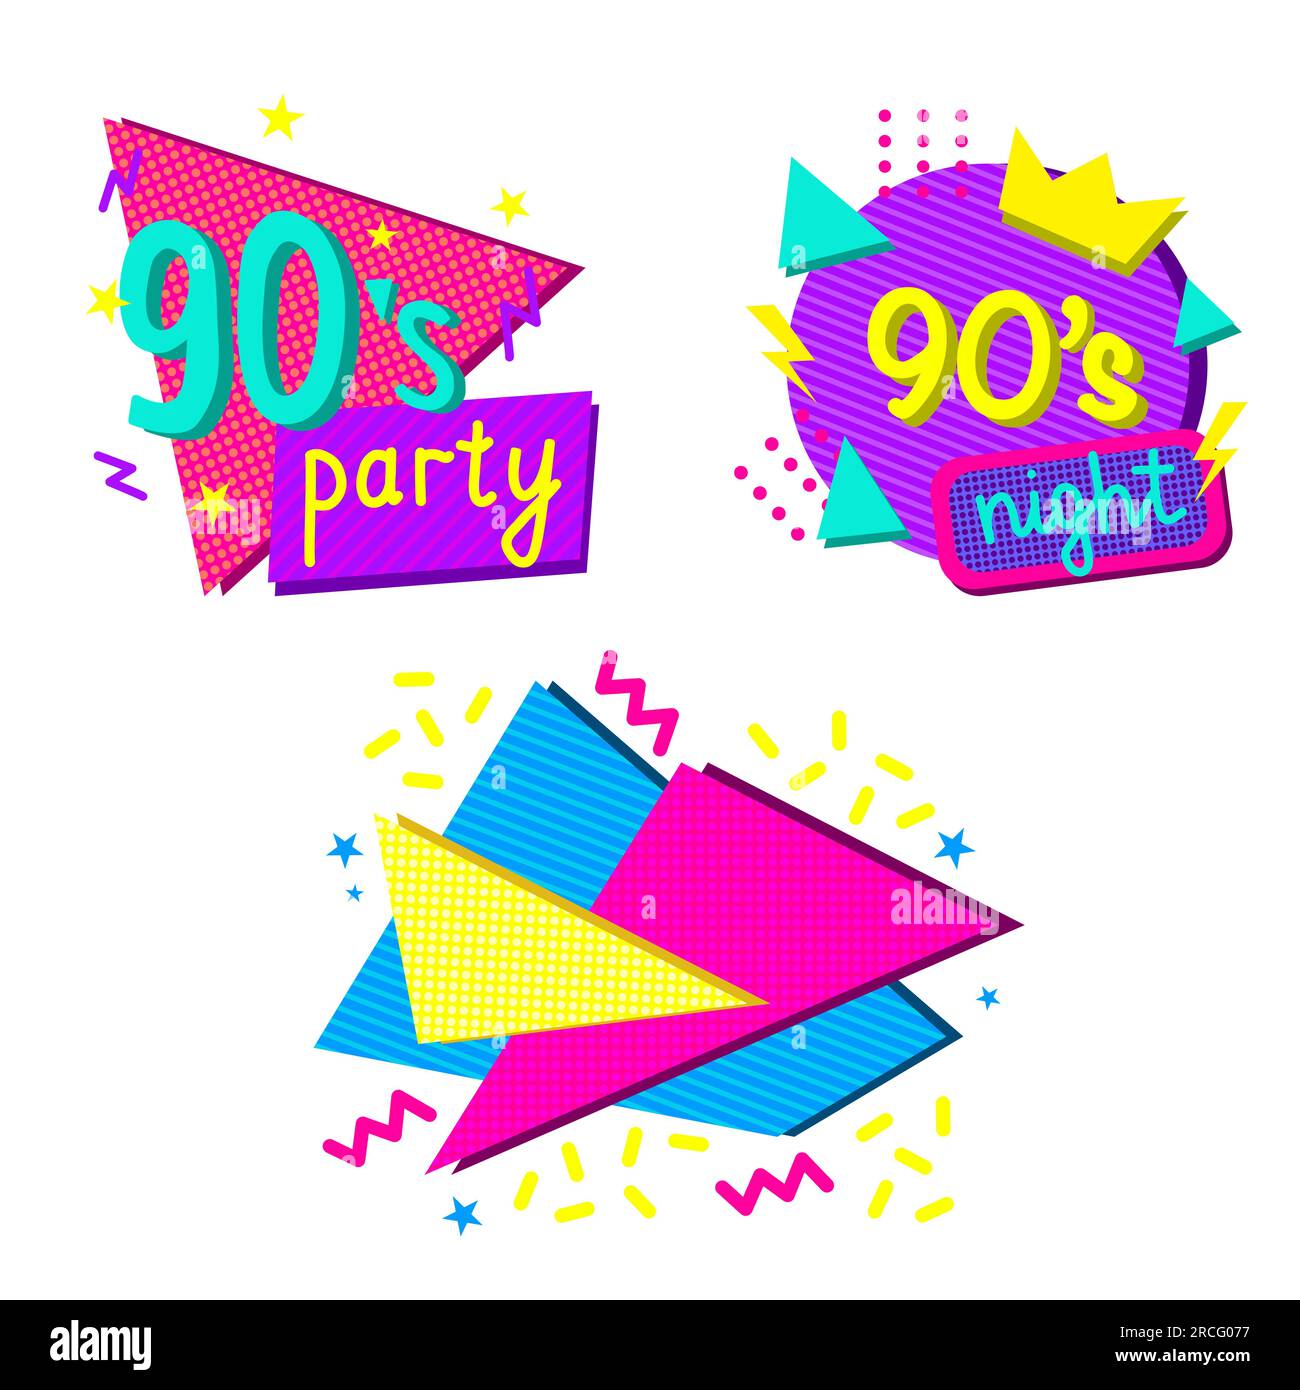 Set mit farbenfrohen Designelementen im Stil der 1990er, Schriftzug mit abstrakten geometrischen Formen, Vektorgrafik für Einladung zu Veranstaltungen oder Partys Stock Vektor